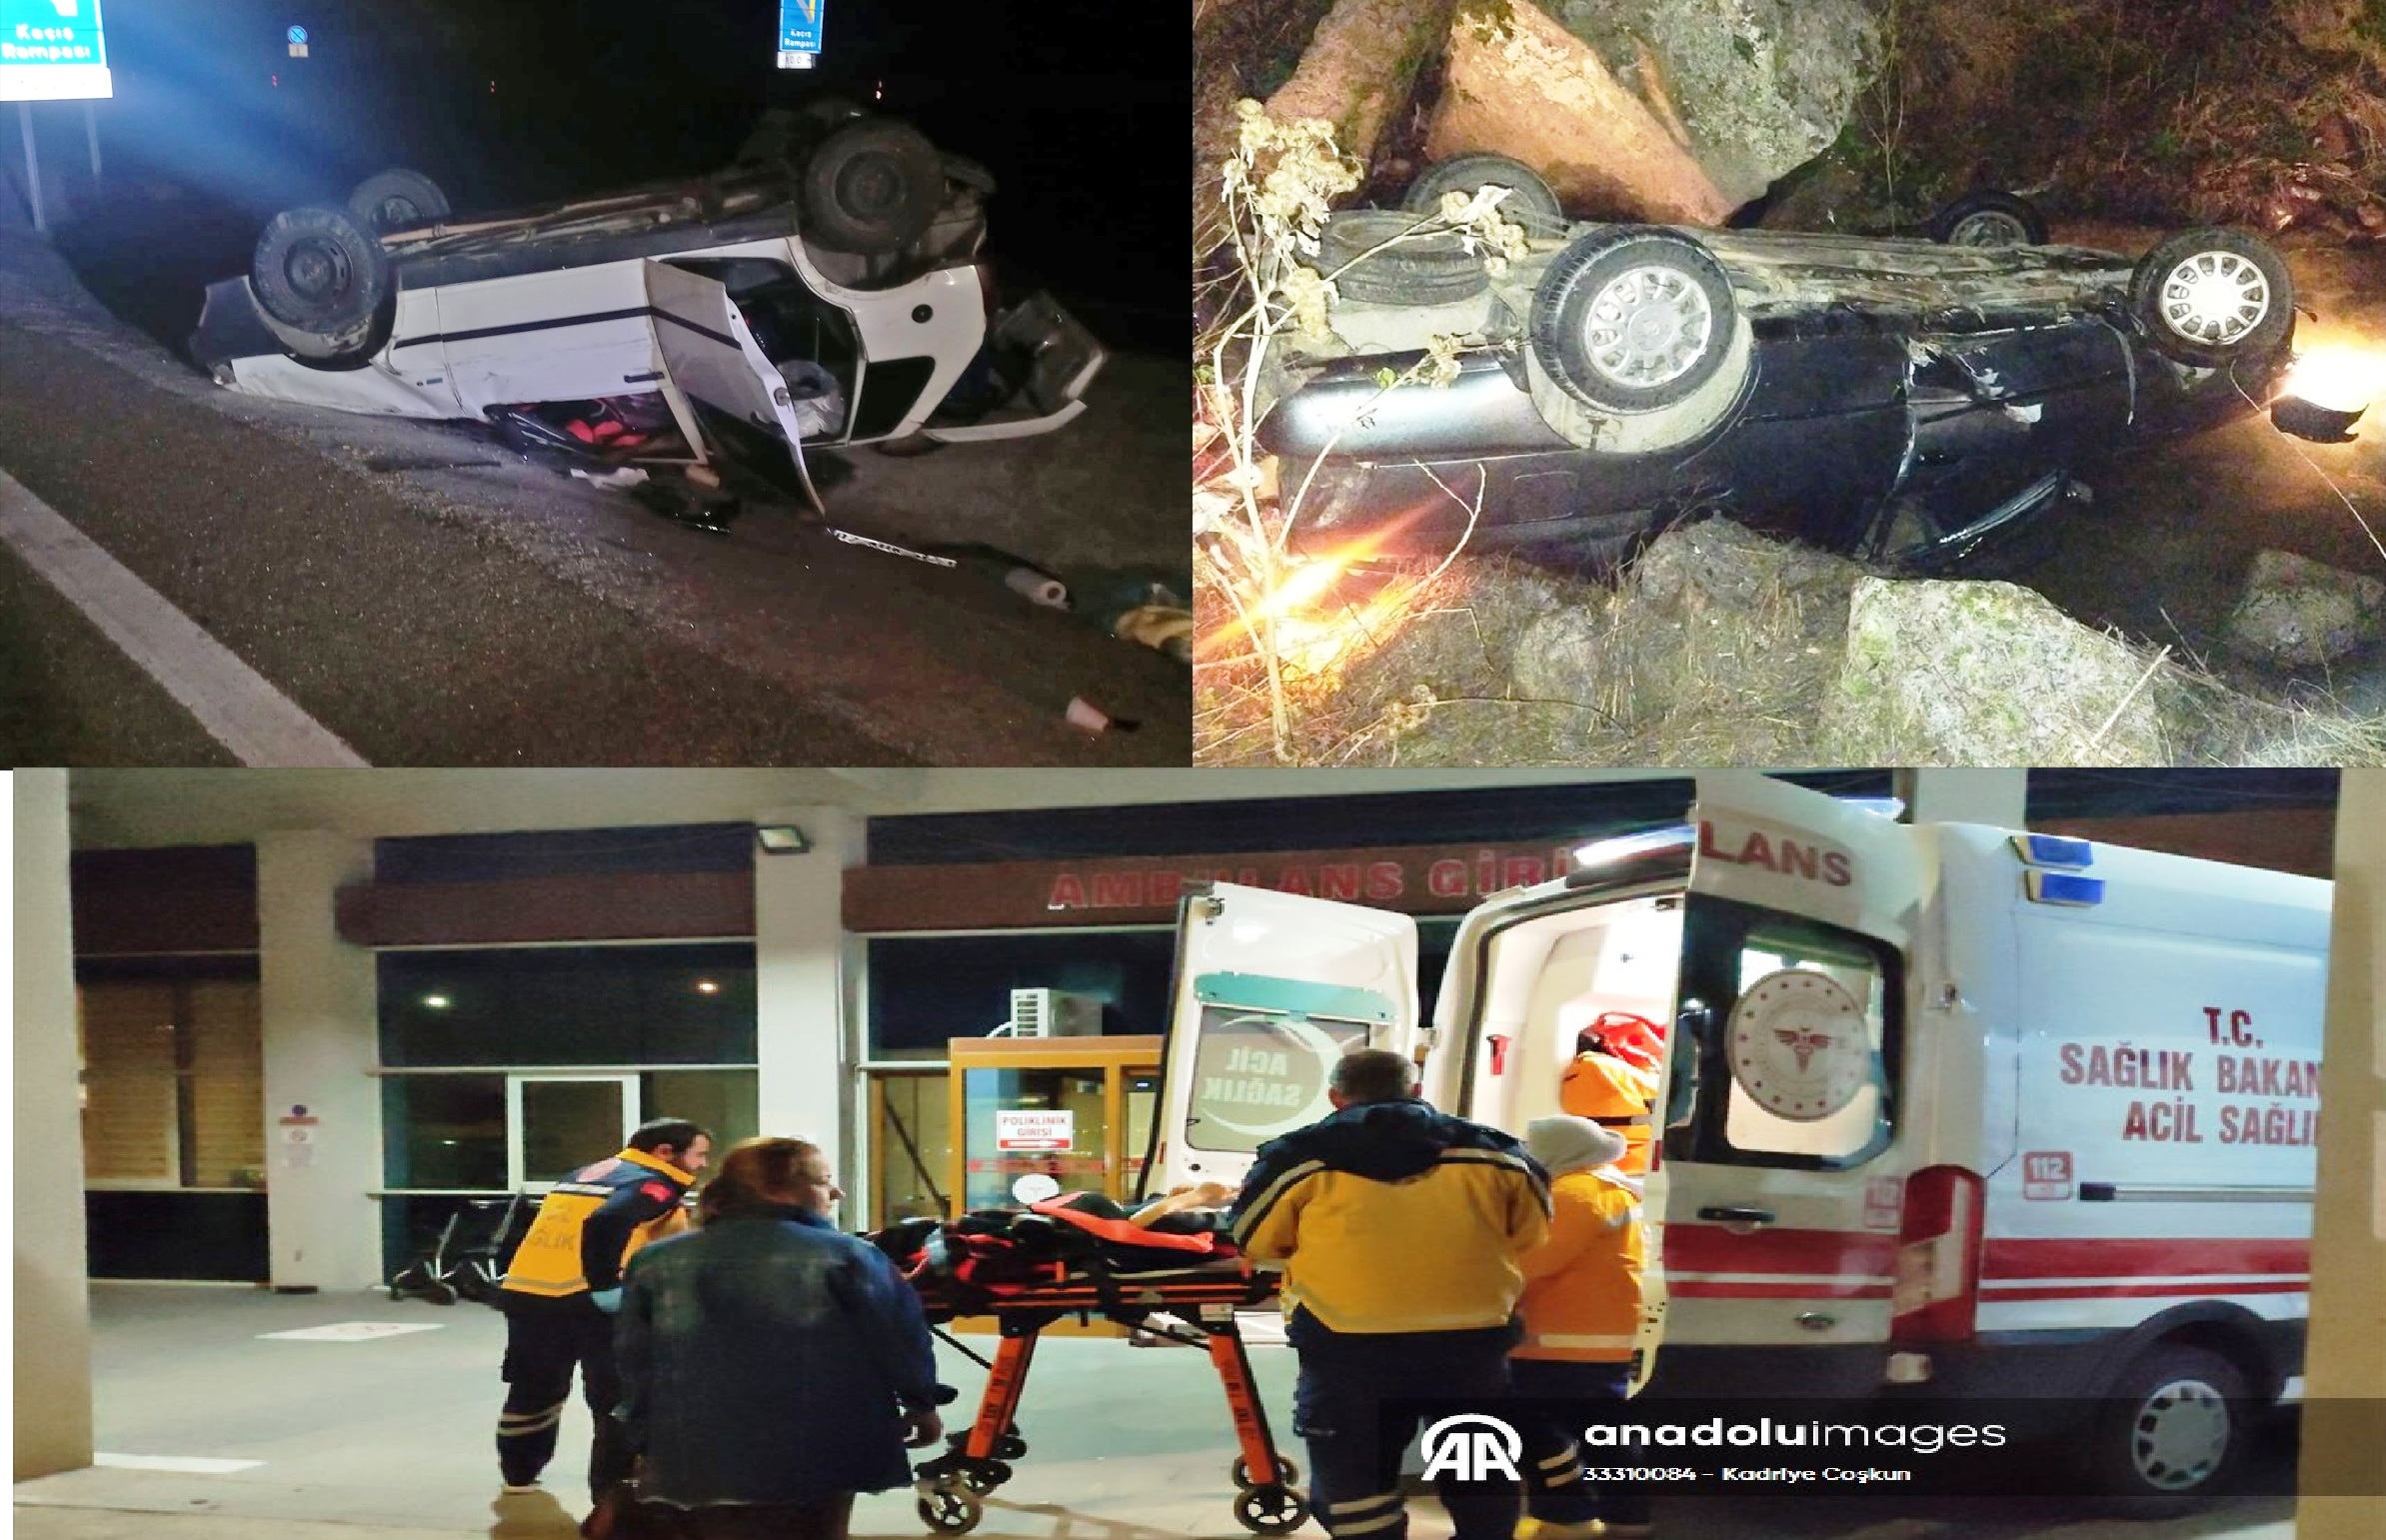 Seydişehir'de İki farklı trafik kazasında 5 kişi yaralandı